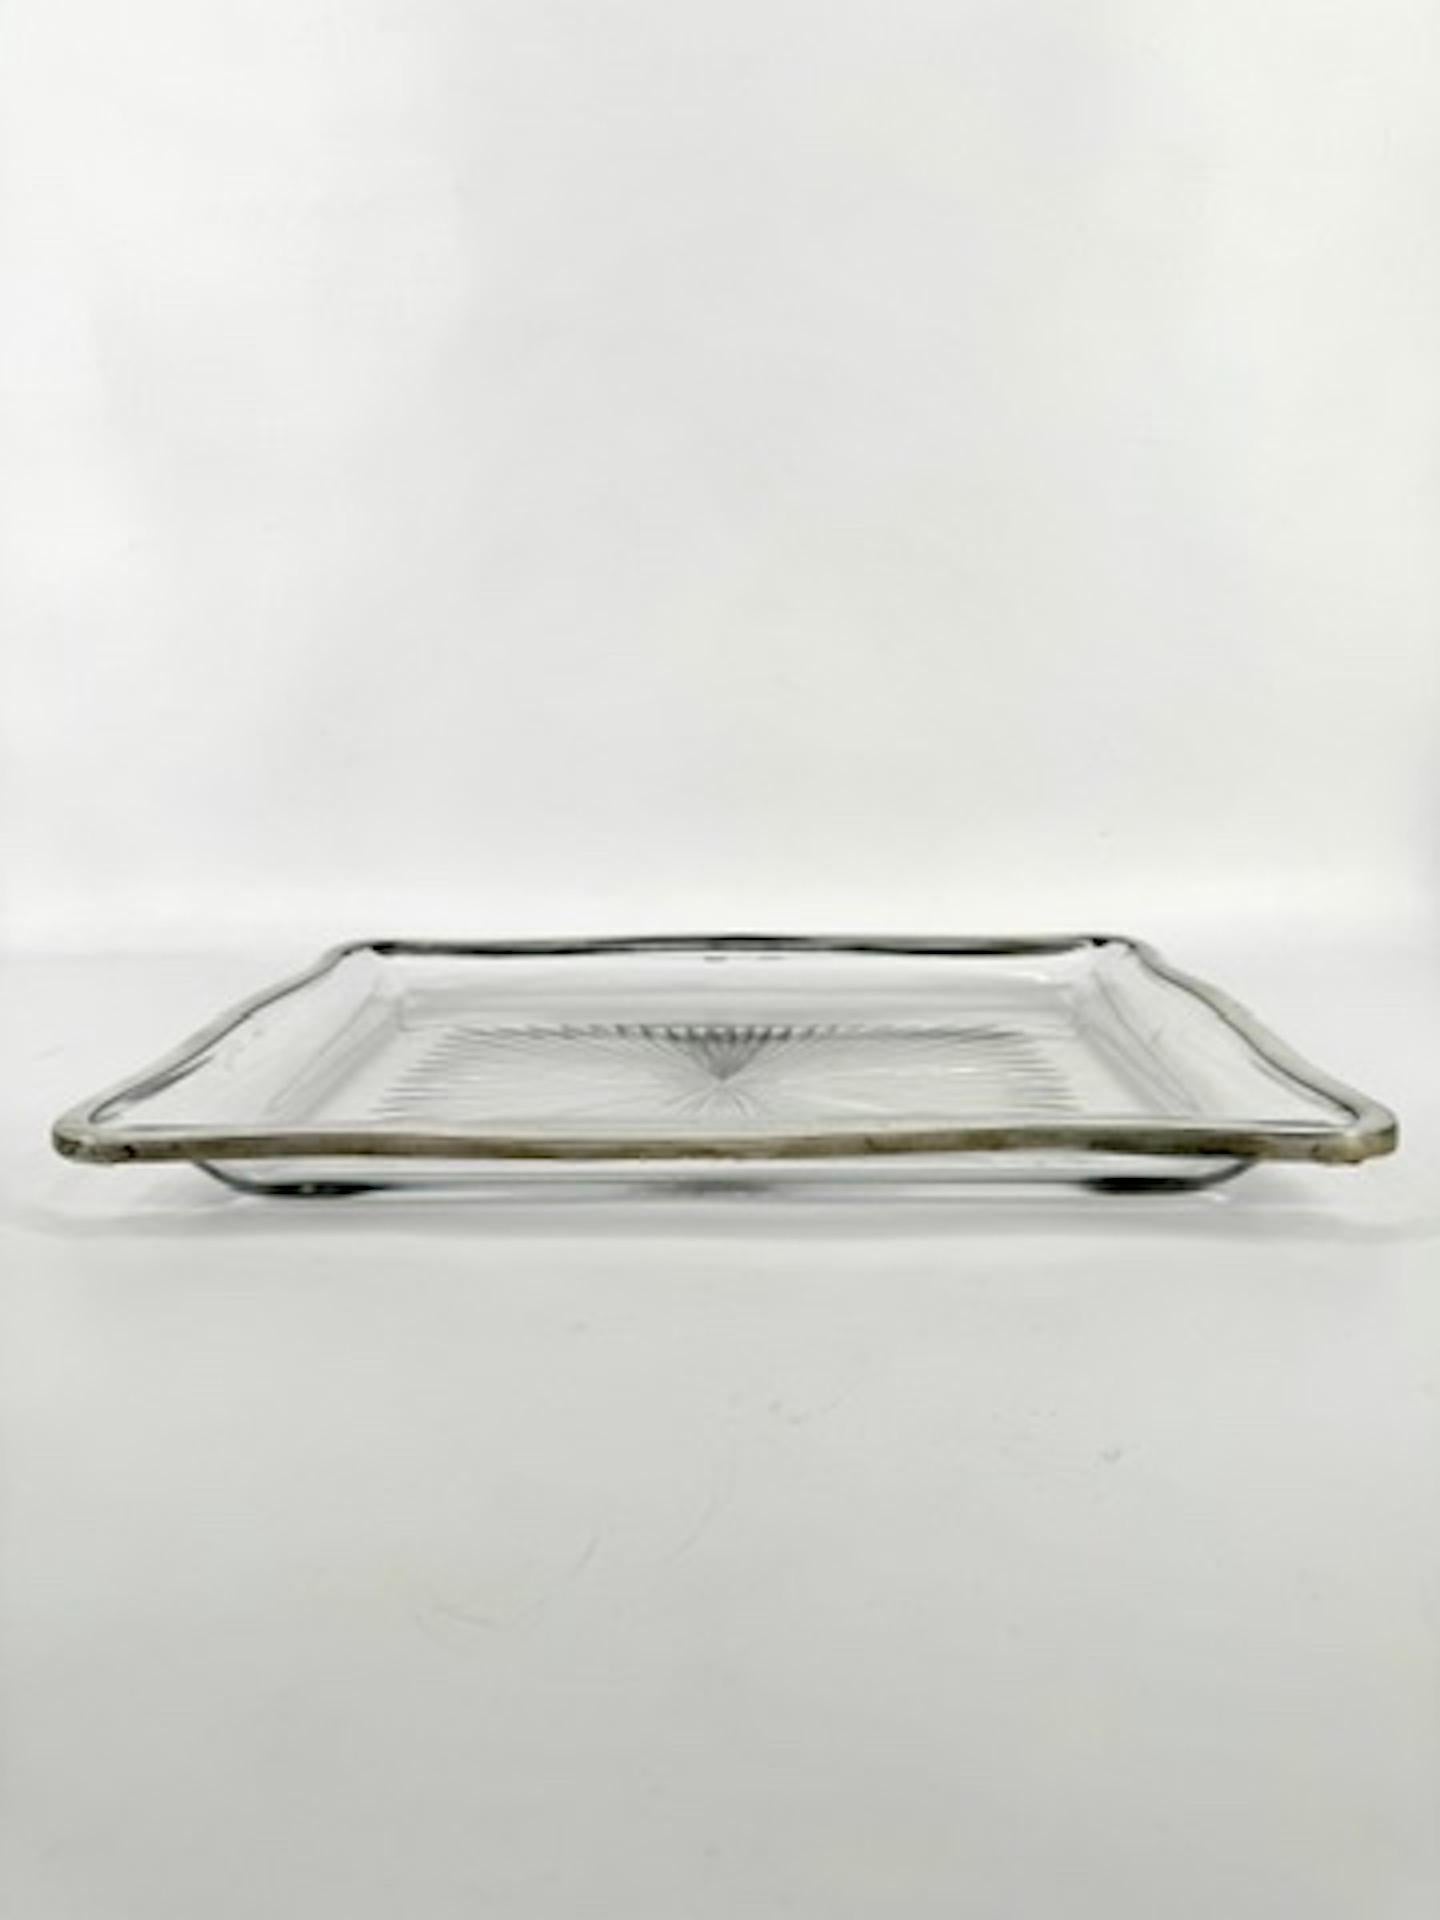 Ein elegantes französisches Kristalltablett des XIX. Jahrhunderts mit tiefen und runden Formen, montiert mit einem Silberband. 

Dieses seltene Tablett von Baccarat hat einen sternförmigen Schliff im Kristall des Bodens.

Die vier Seiten des